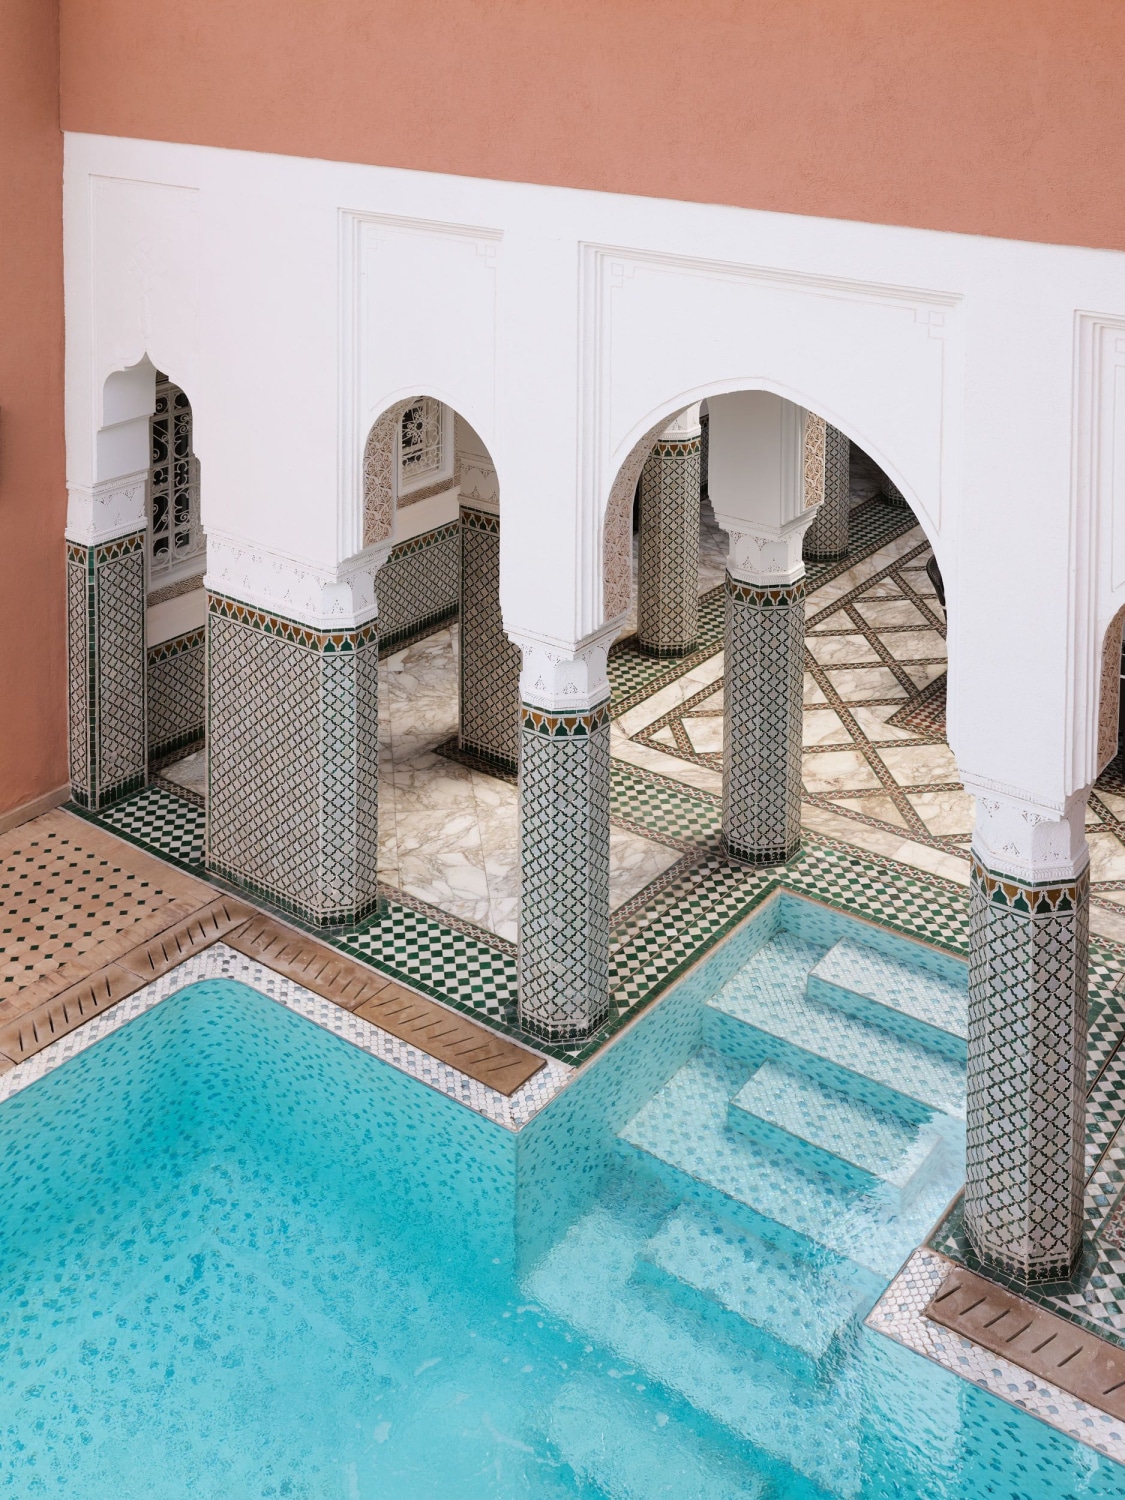 La mamounia maroc piscine